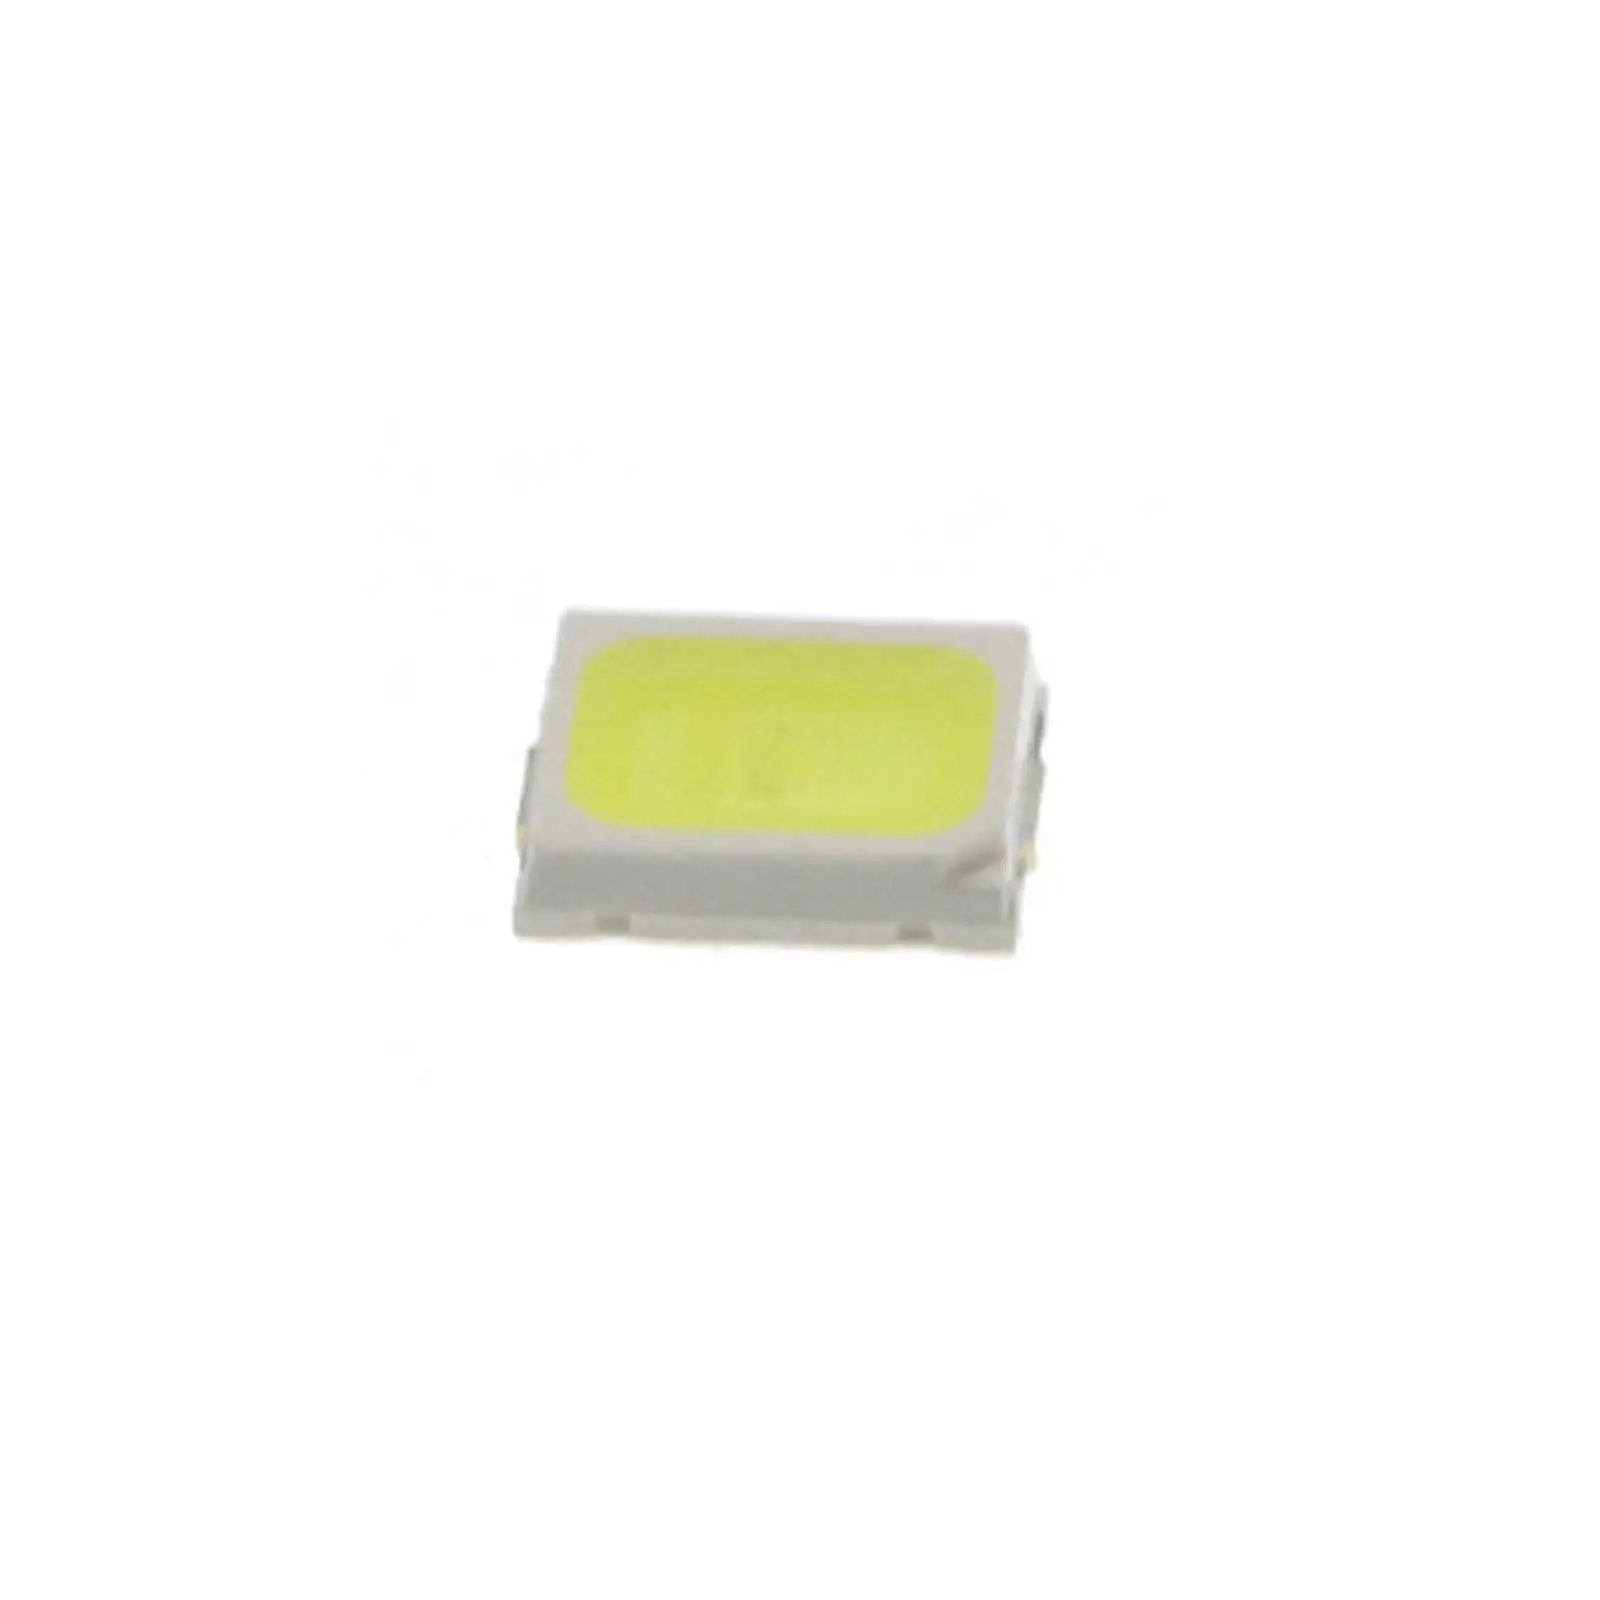 100 2835 COLD WHITE SMD LED Diode Lights Surface Mount Chip 2.8 X 3.5mm 3V